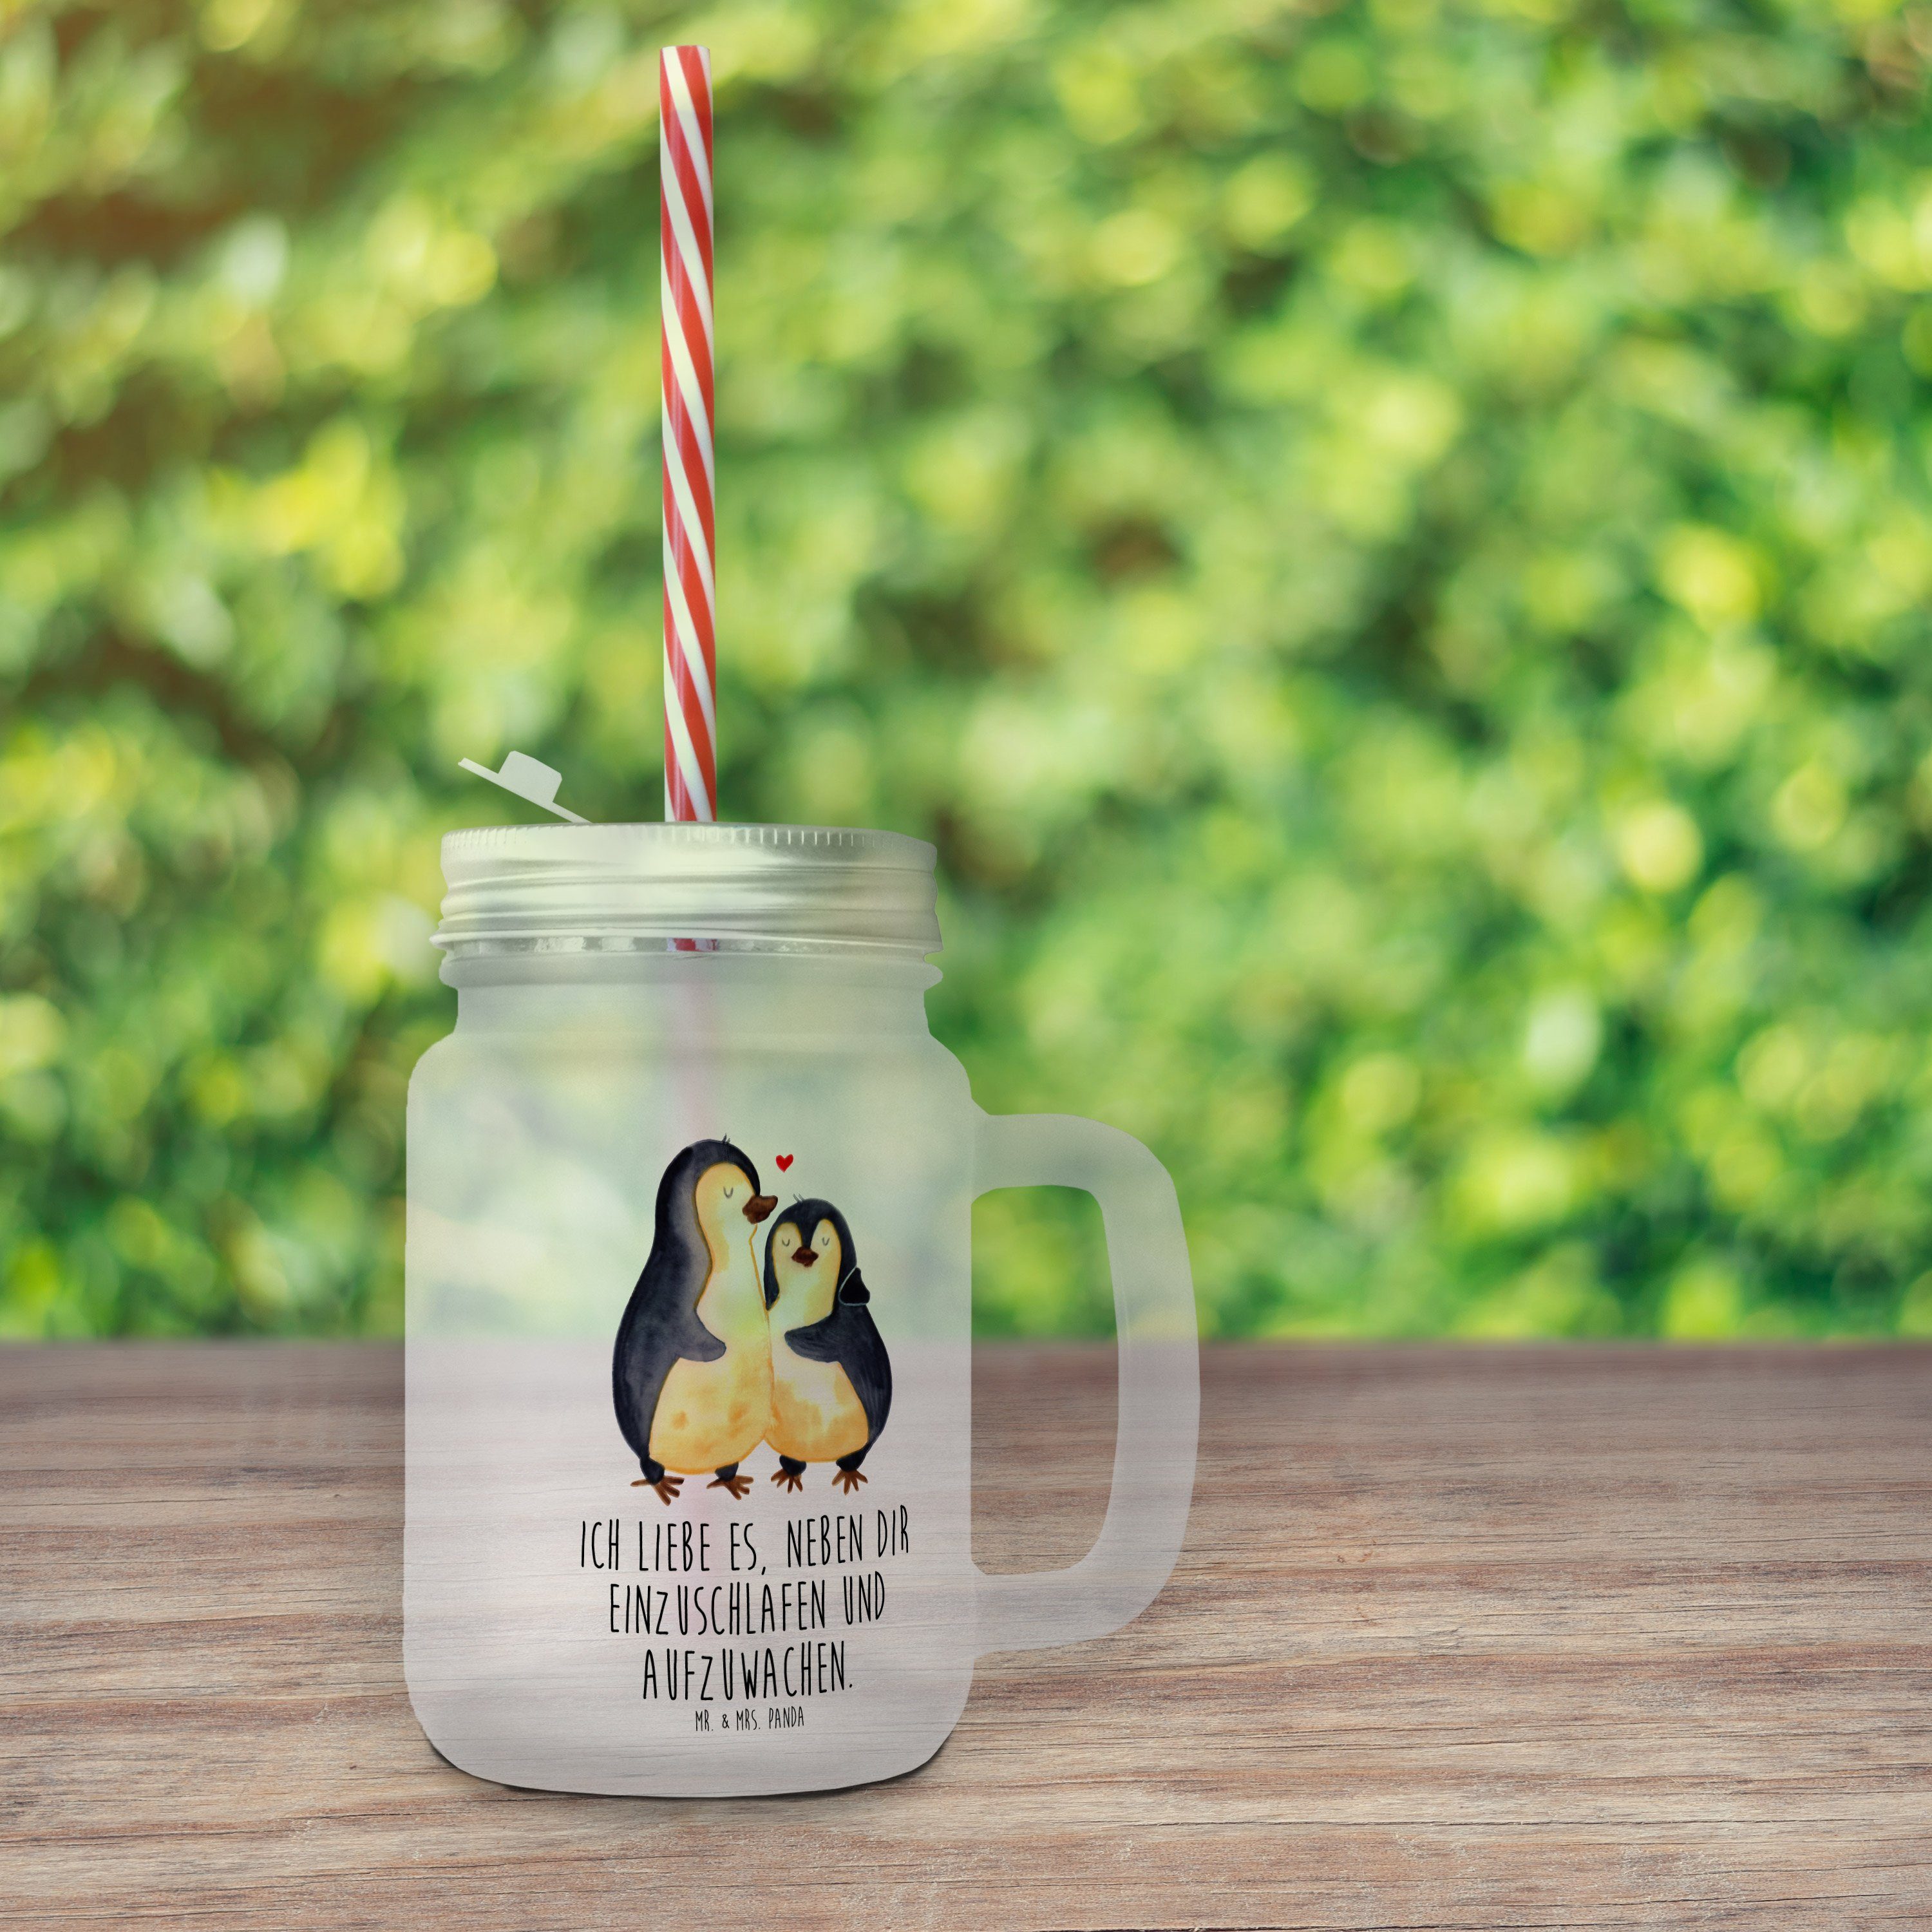 Panda & Pinguine Hocheitstag, Mr. Transparent Einschlafen Trinkglas, Geschenk, Mrs. Glas - - Premium Glas